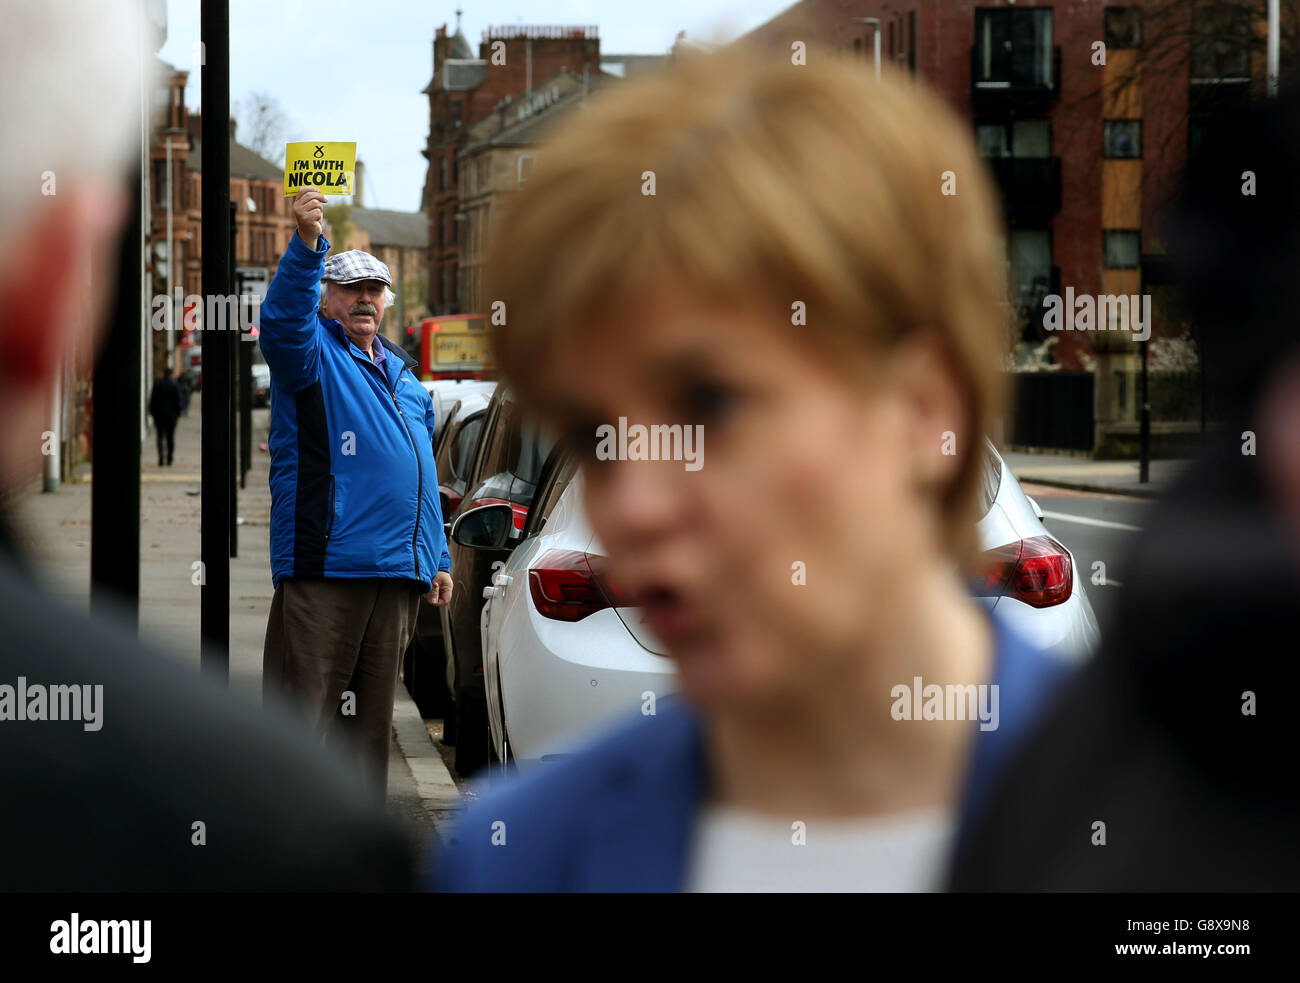 Un sostenitore della SNP ha un cartello, in quanto il leader della SNP e il primo ministro Nicola Sturgeon si trova alle porte della BAE Systems presso il cantiere Govan di Glasgow, dove ha incontrato rappresentanti dei sindacati durante la campagna elettorale scozzese. Foto Stock